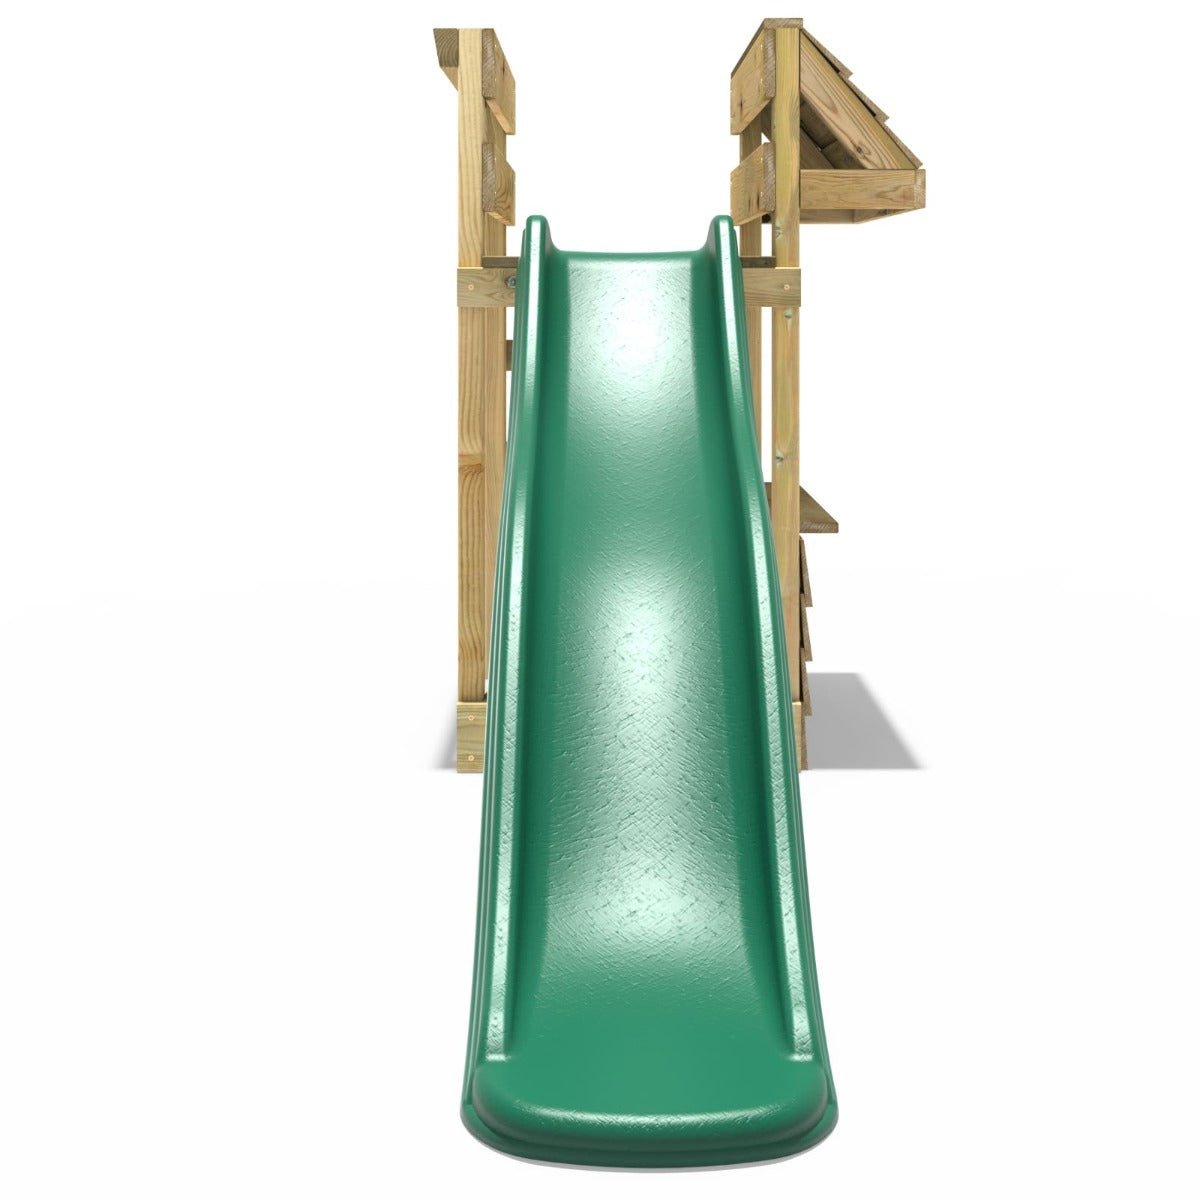 Shop Pack Add-on Wooden Platform with 6FT Slide for Rebo Swing Sets – Dark Green